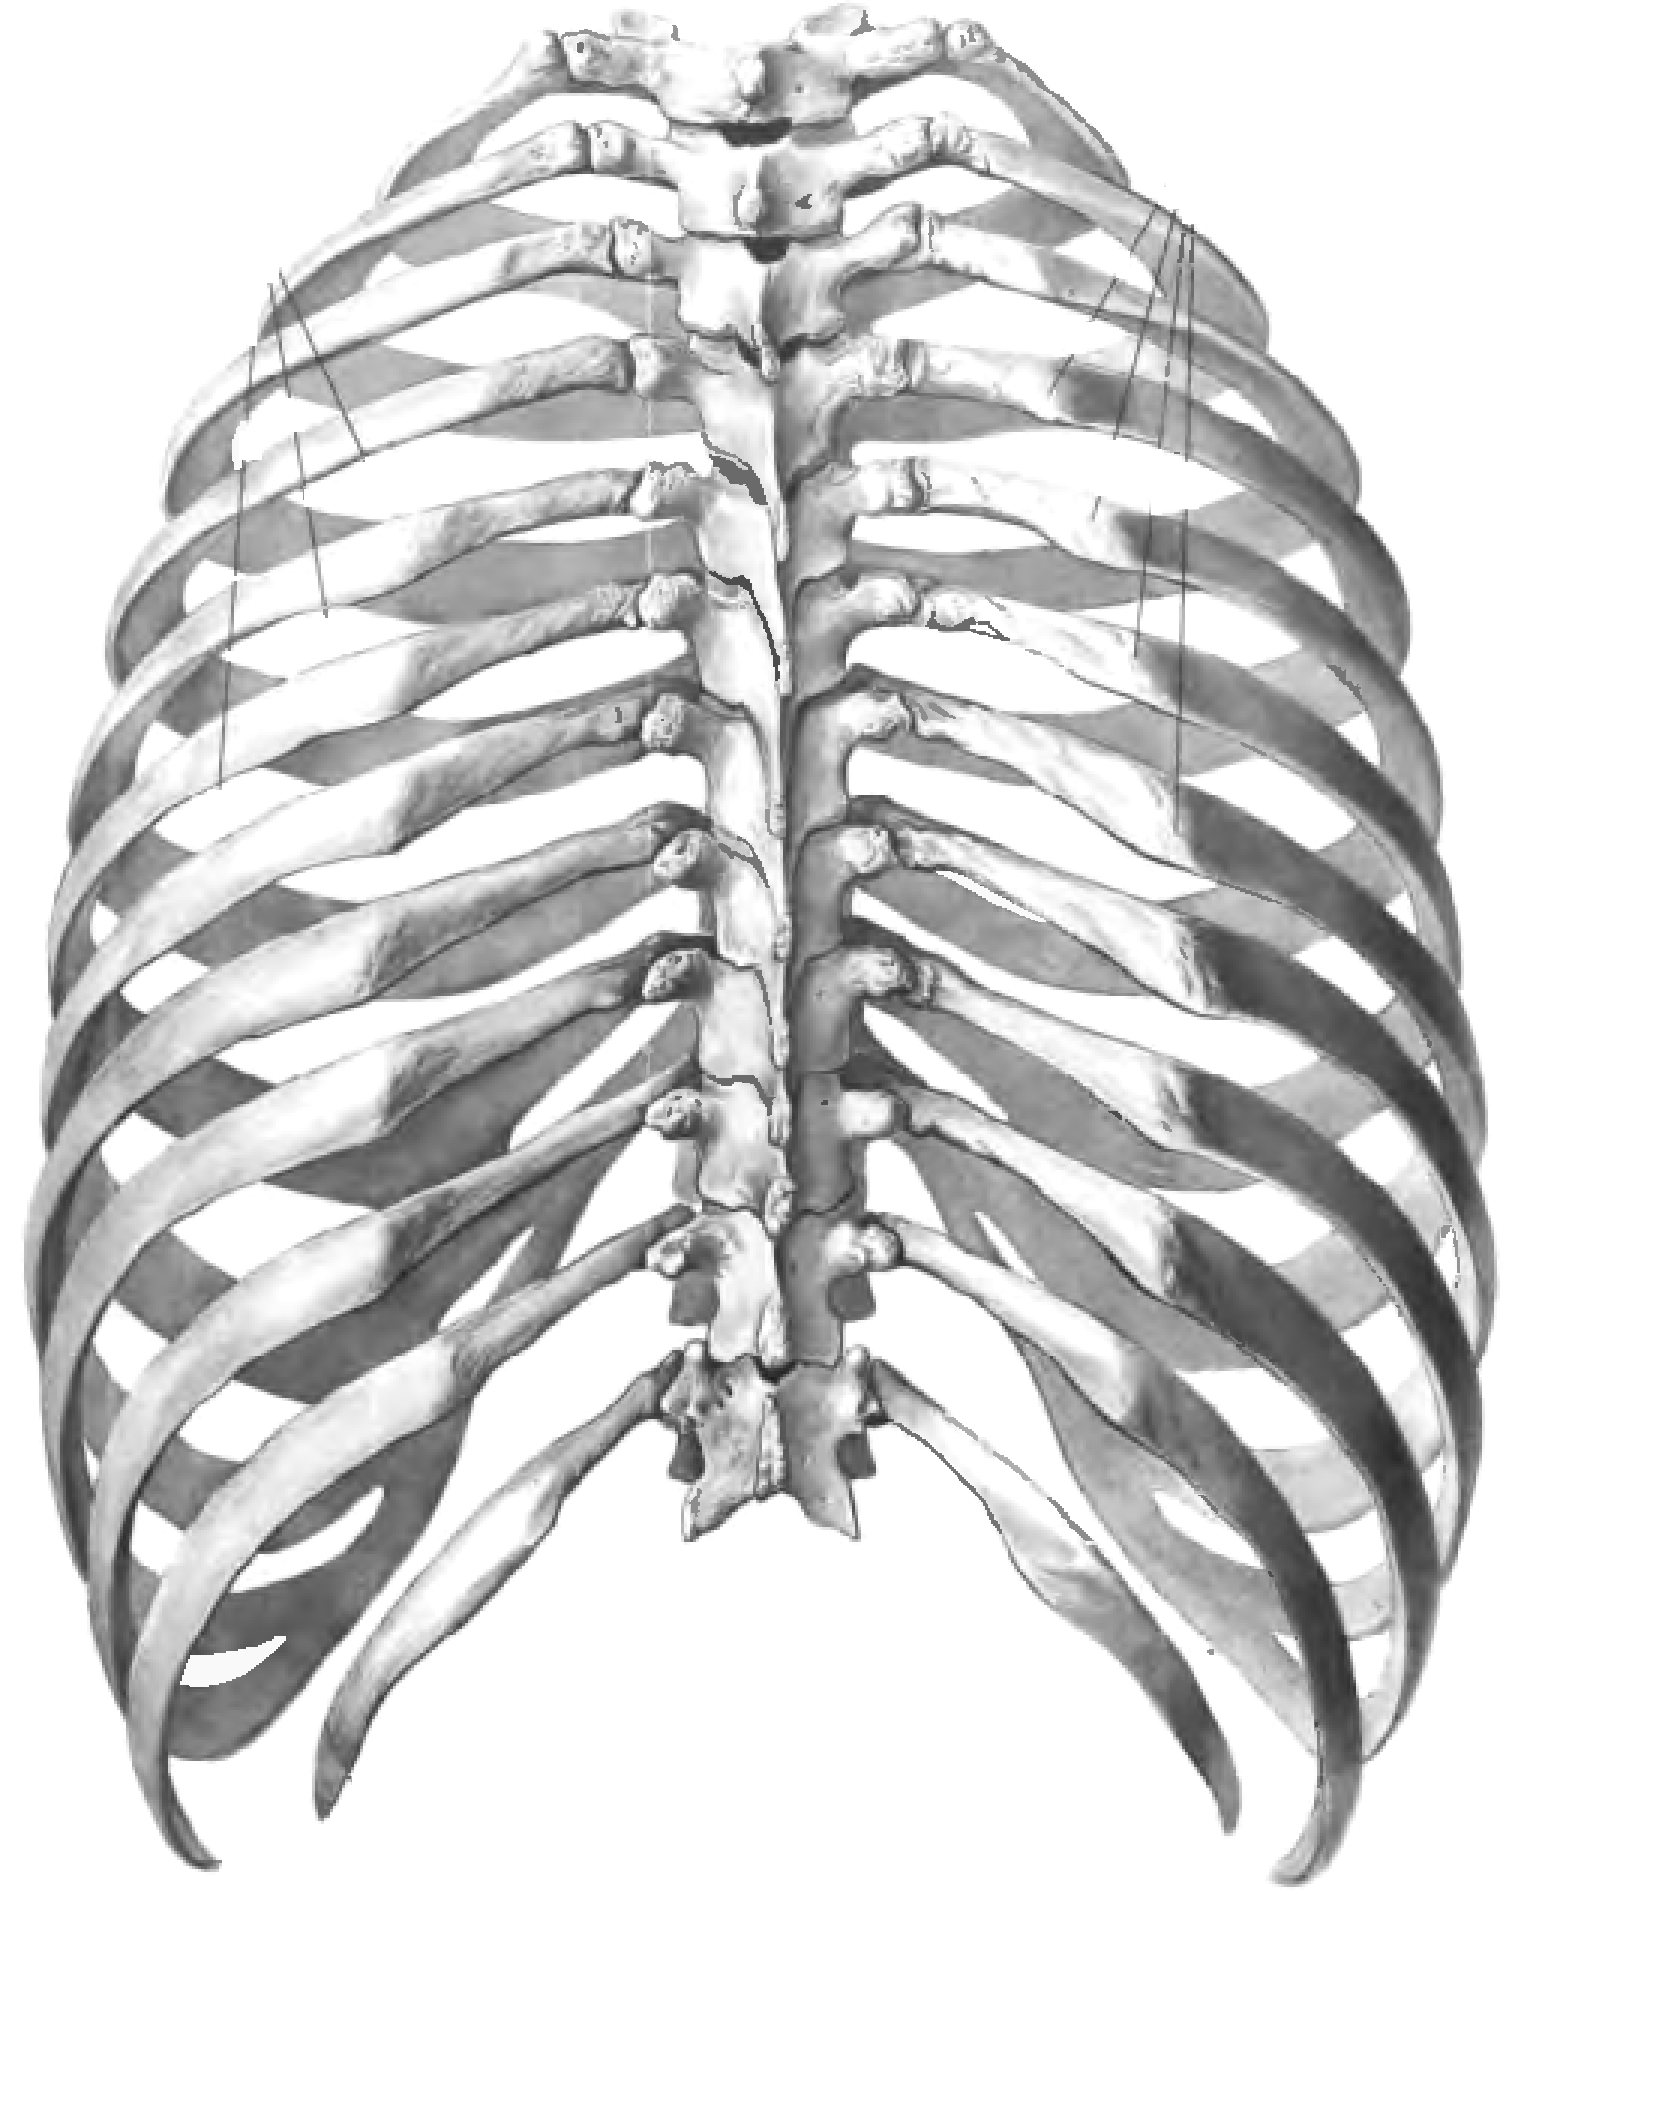 Нижние края ребер. Анатомия скелет грудной клетки ребра Грудина. Грудная клетка анатомия человека вид спереди. Грудная клетка с ребрами и грудиной.